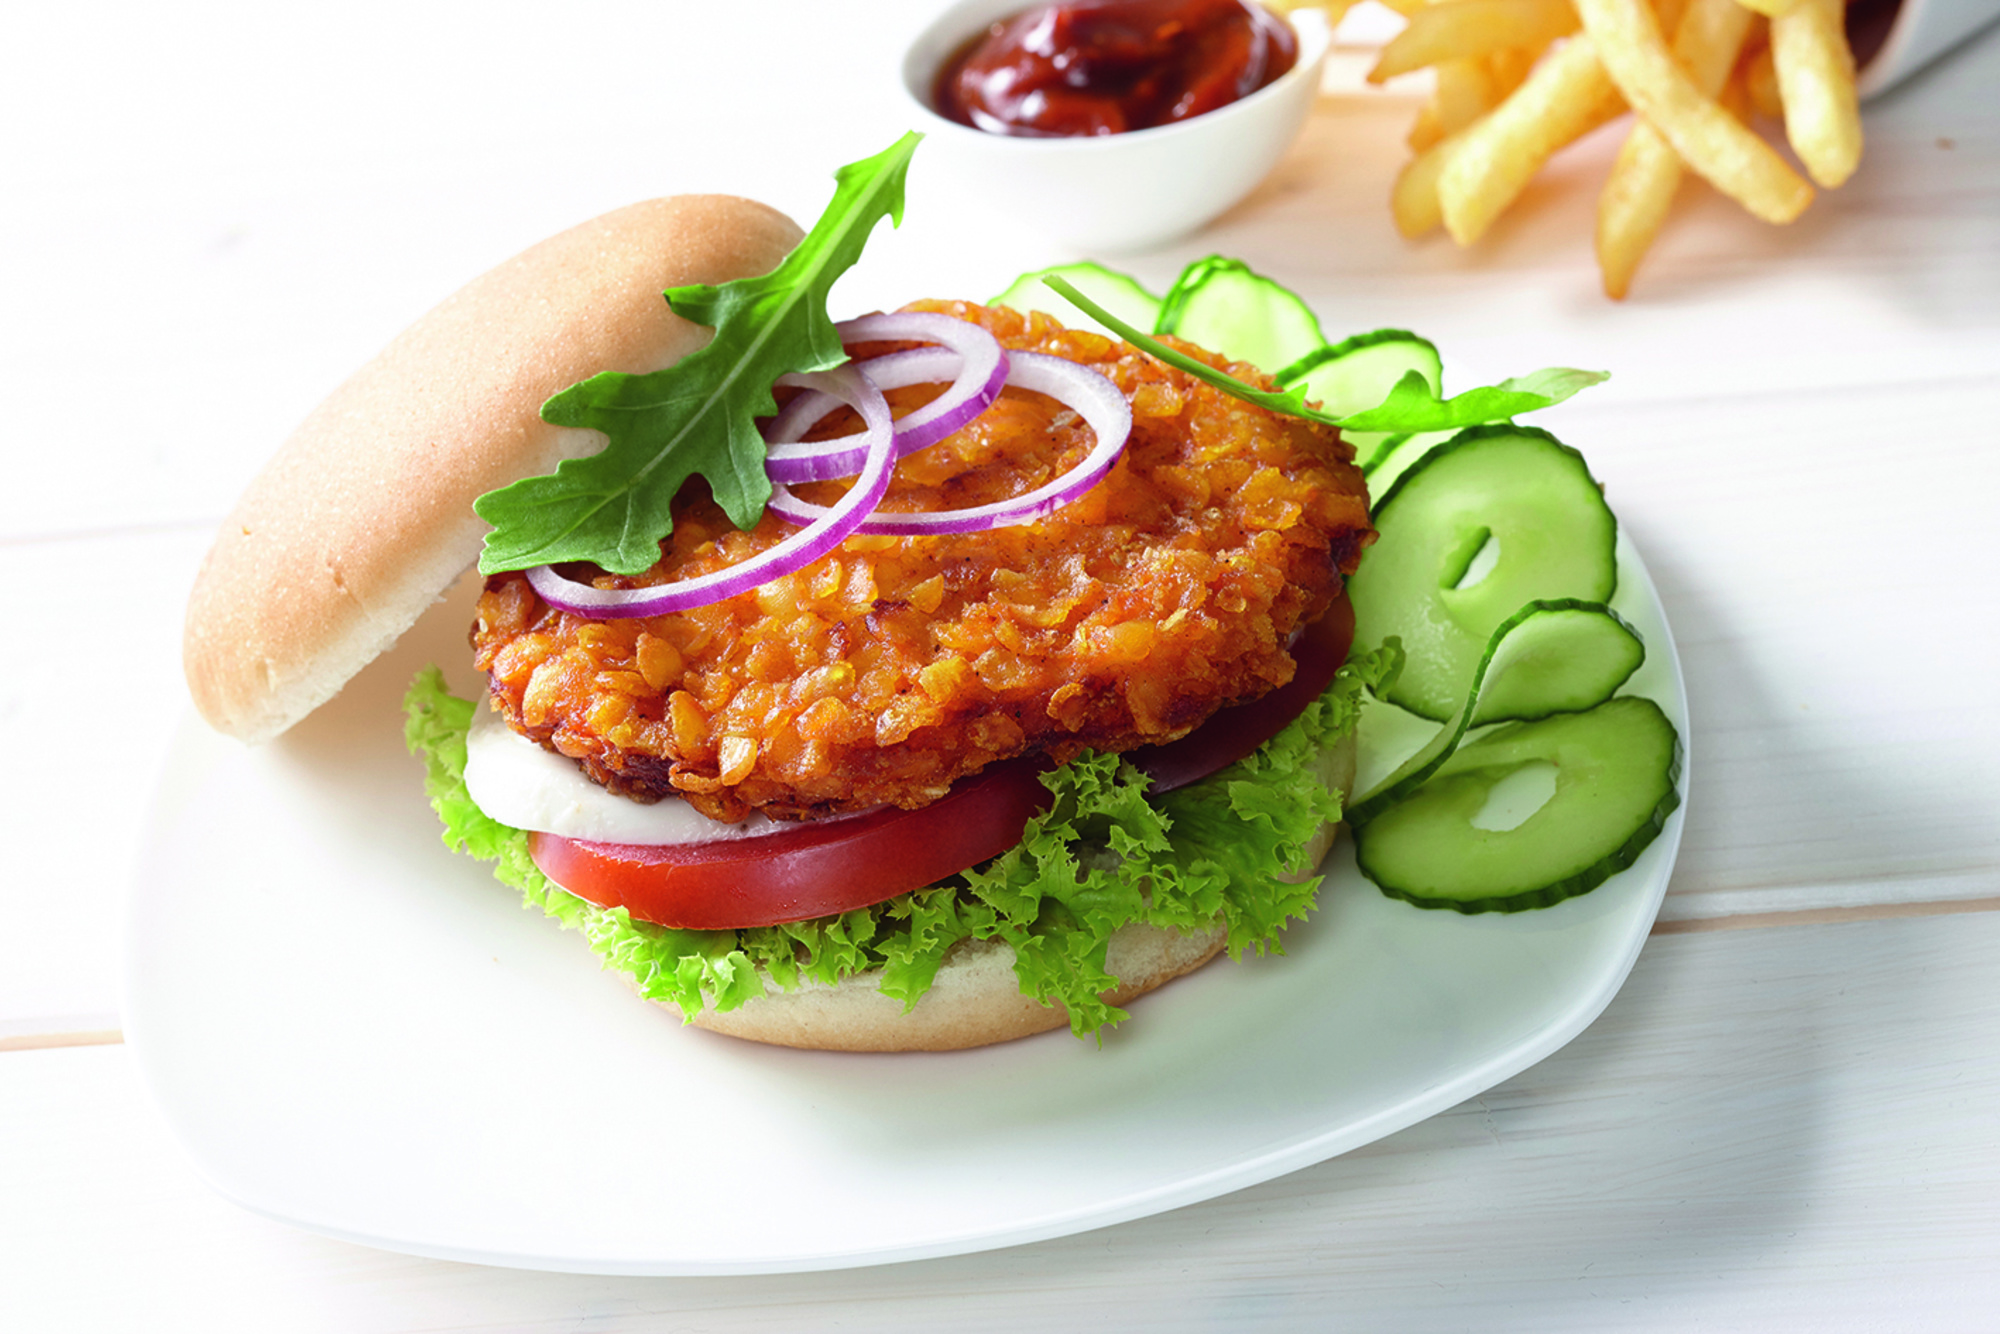 Crunchy Chicken Burger 130g